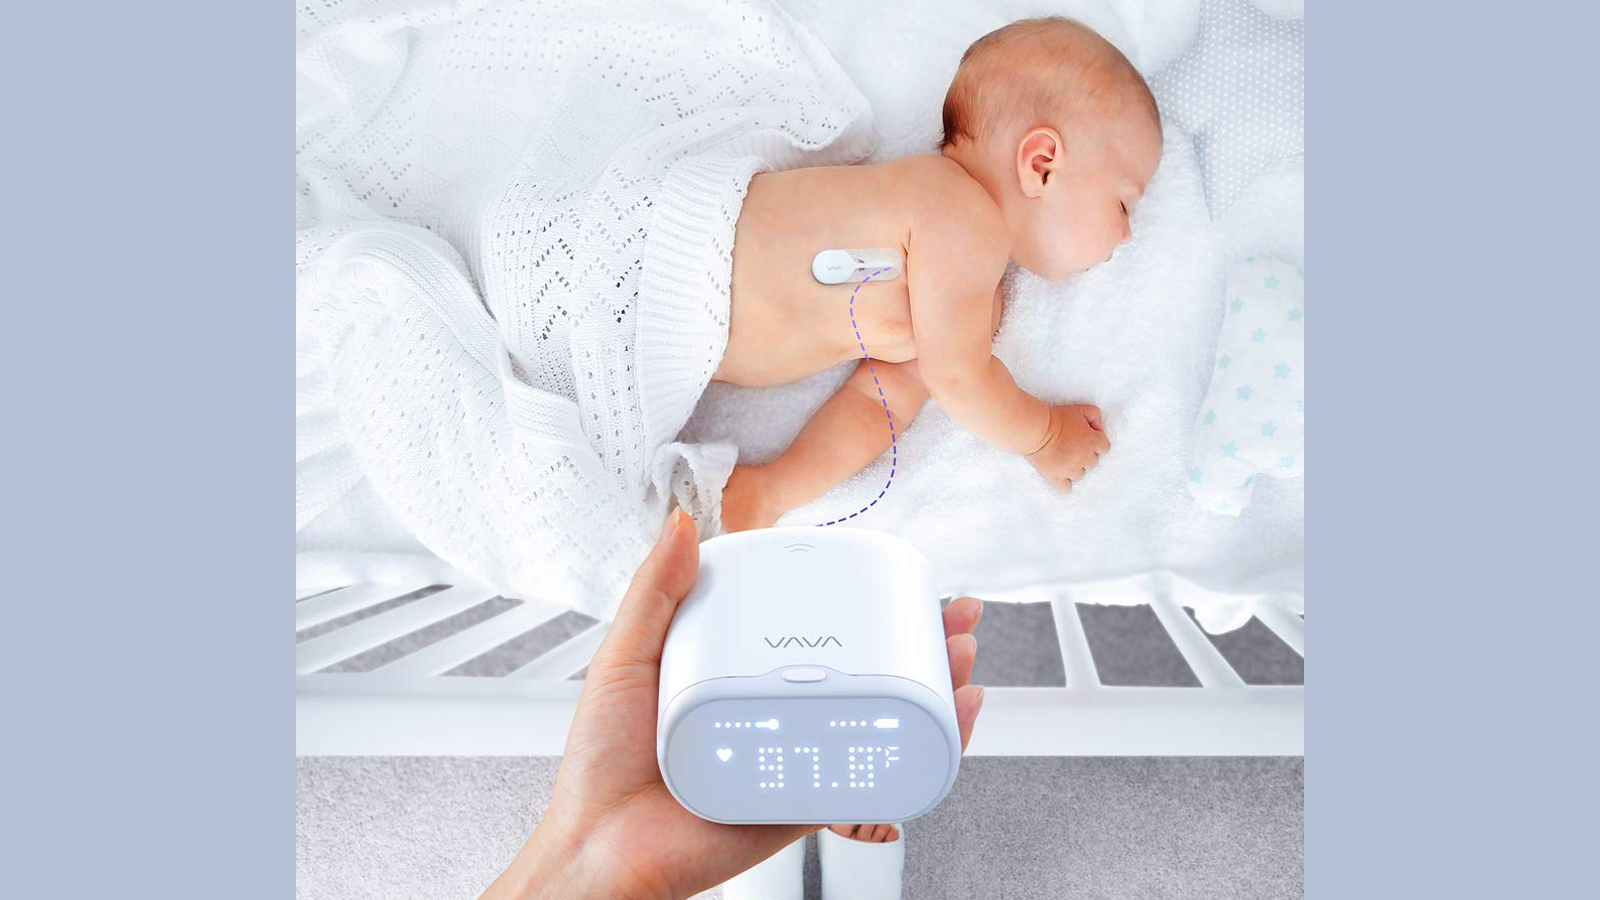 يحمل الوالدان قارئ ميزان الحرارة أثناء النظر إلى الطفل في السرير